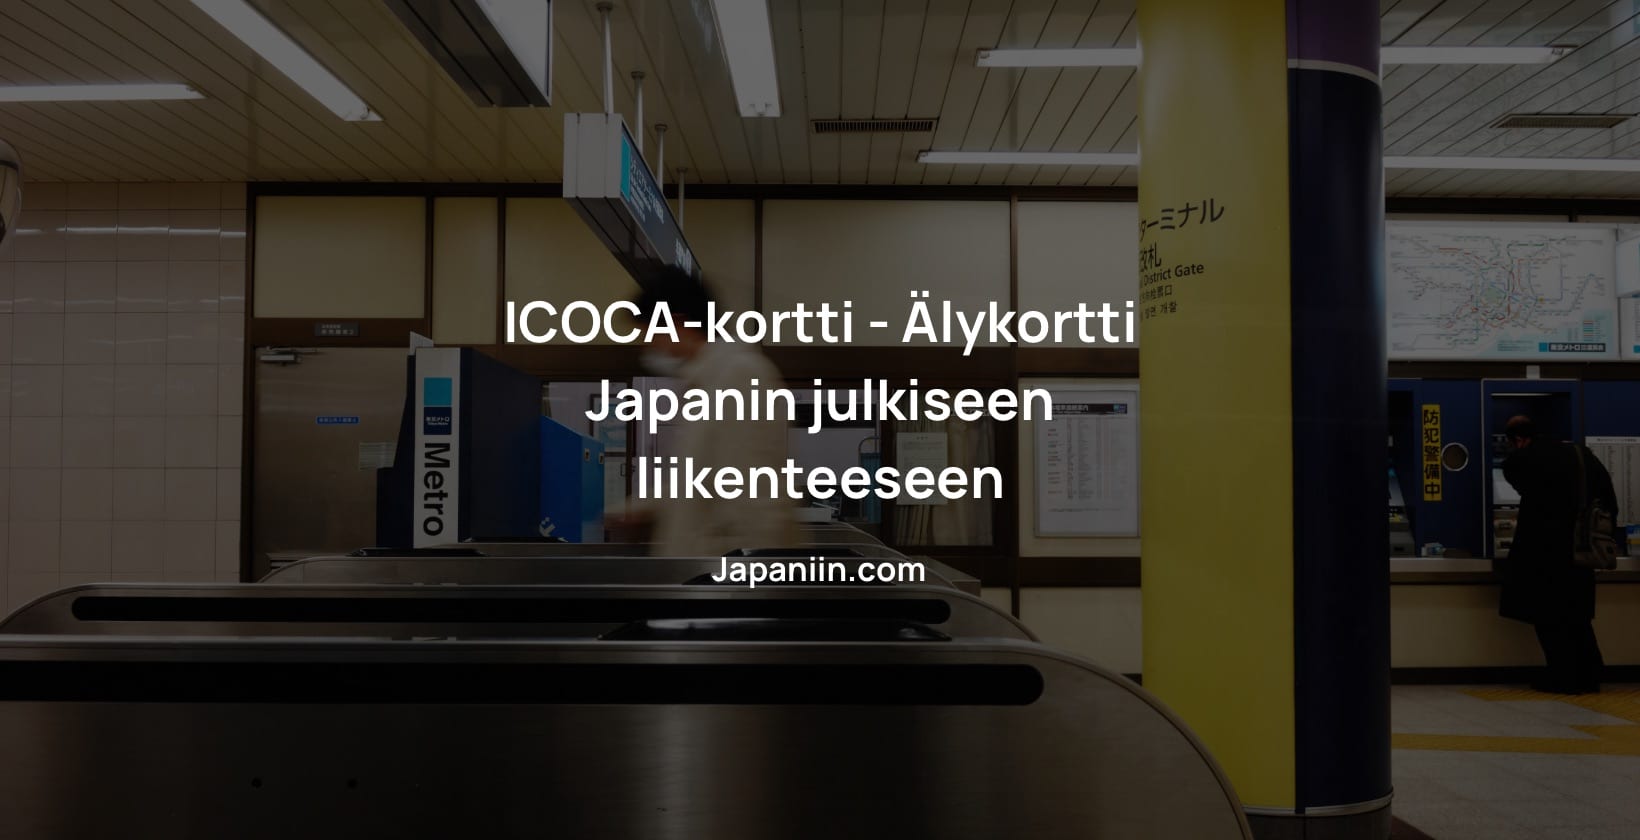 ICOCA-kortti on sujuva älykortti, joka mahdollistaa yksinkertaisen maksamisen Tokion, Osakan ja Kansain alueella.